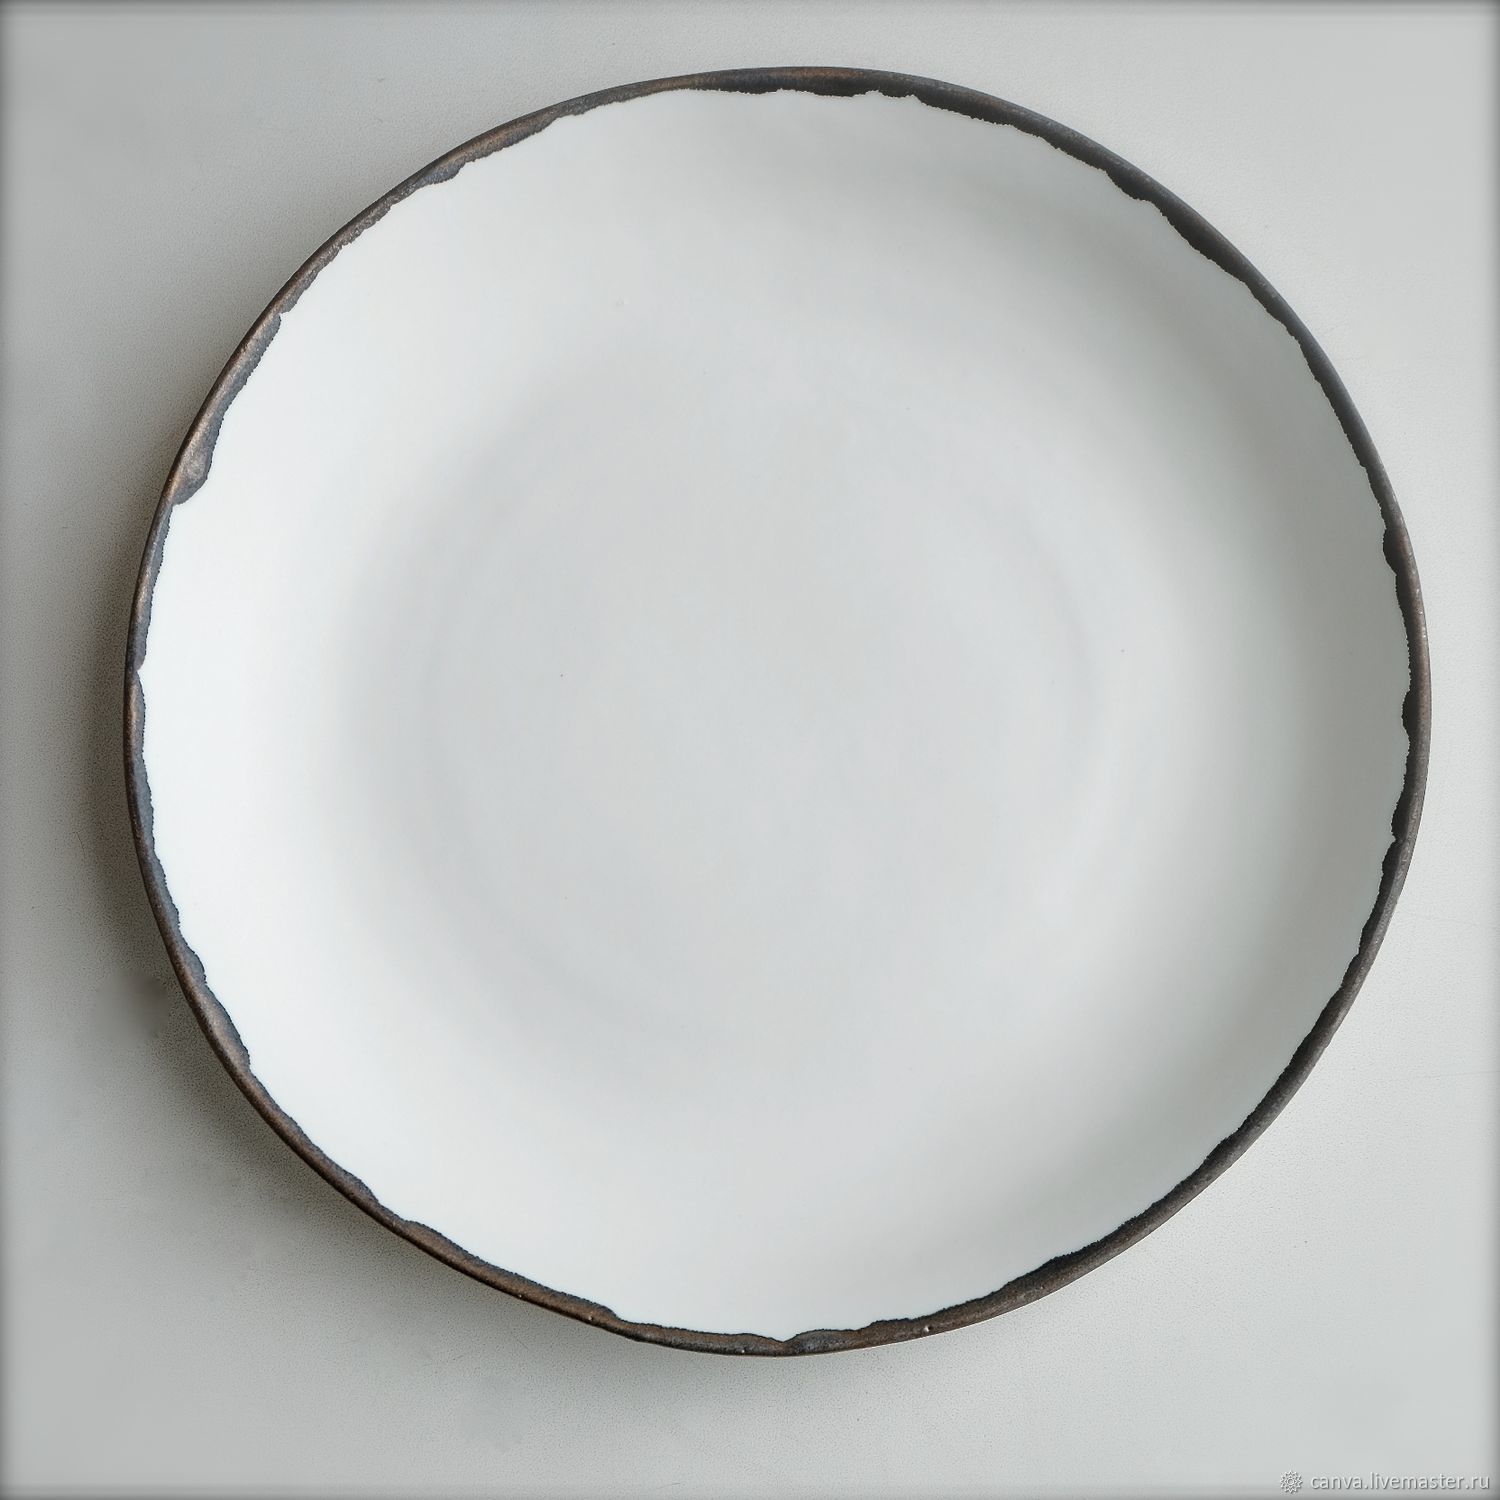 Купить хорошие тарелки. Тарелка Agathon p1510. Тарелка pt020026f. Тарелка плоская круглая 18см (гладкая) белая OLS-118 Shanghai co.